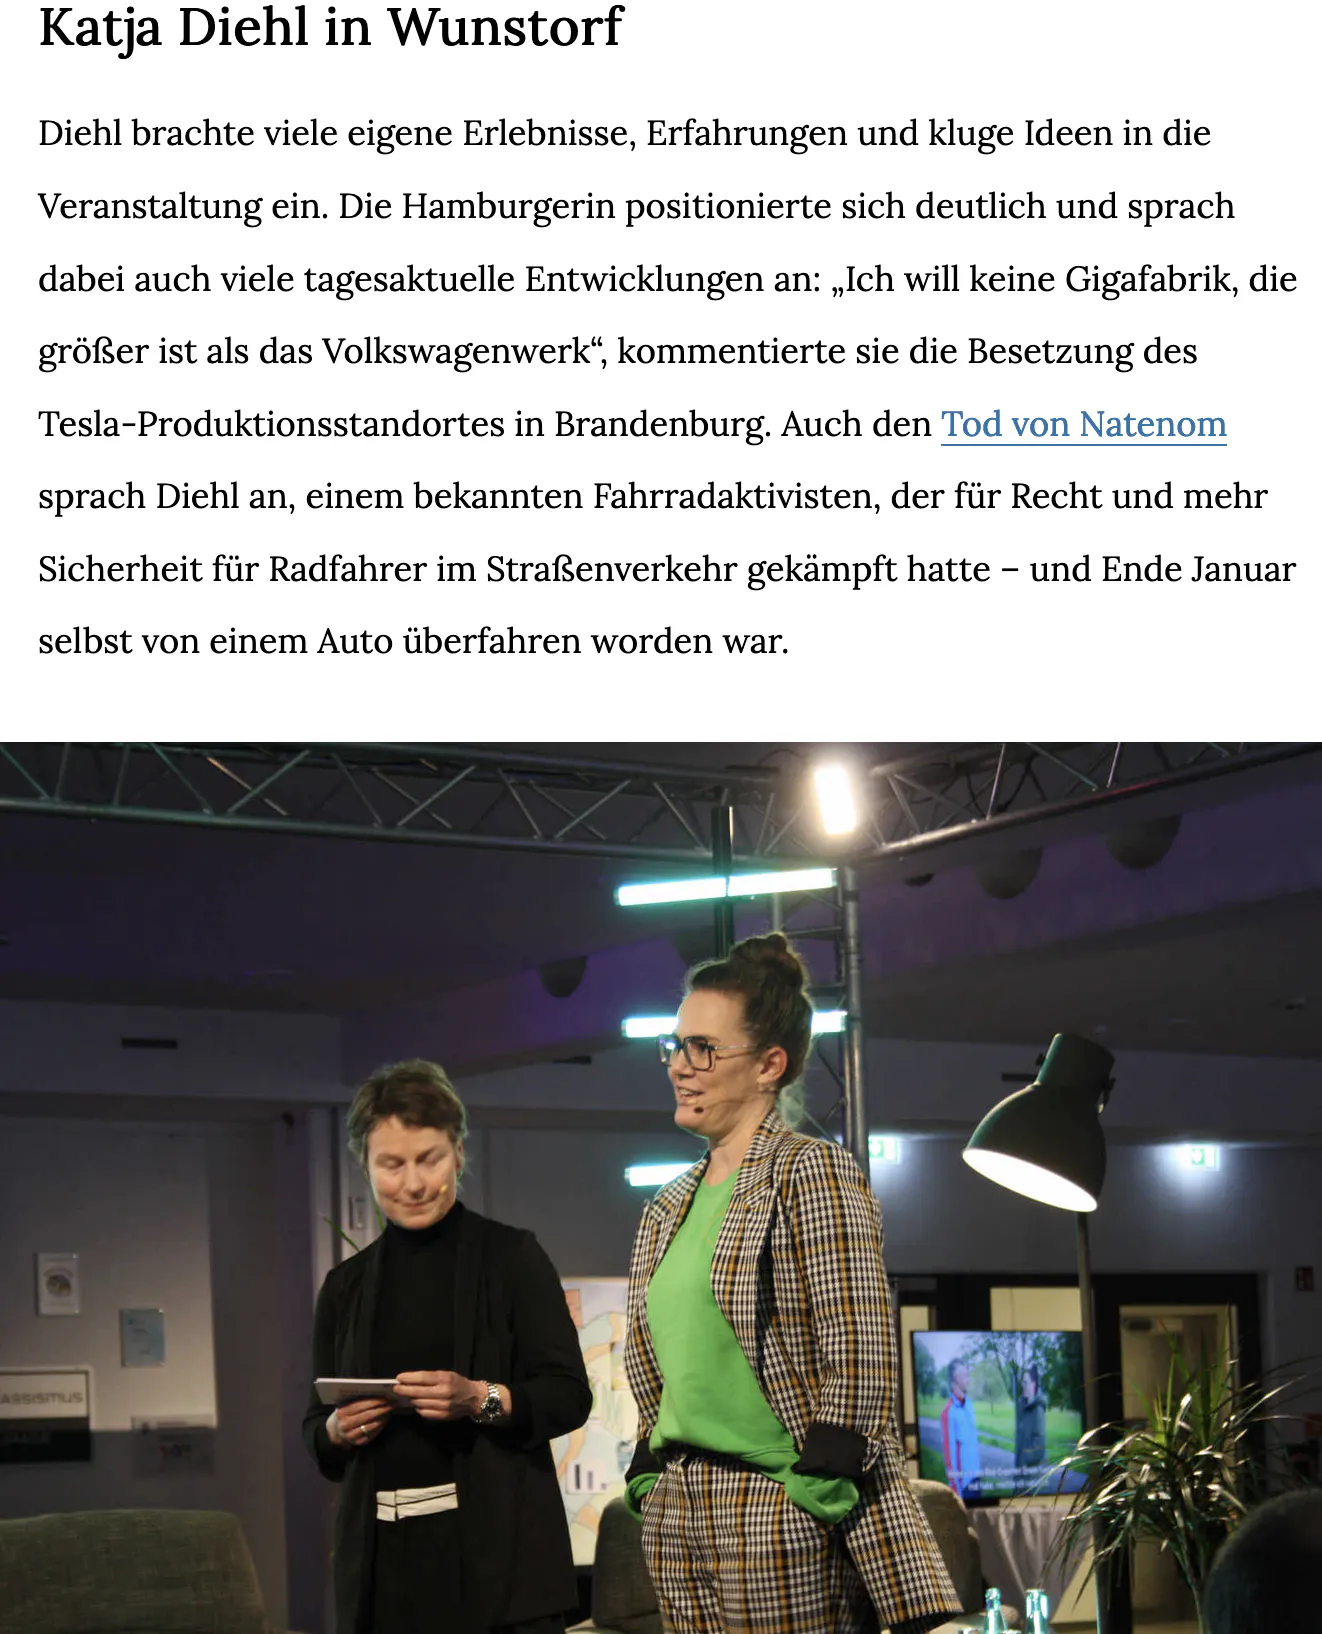 Screenshot vom Artikel:
Katja Diehl in Wunstorf